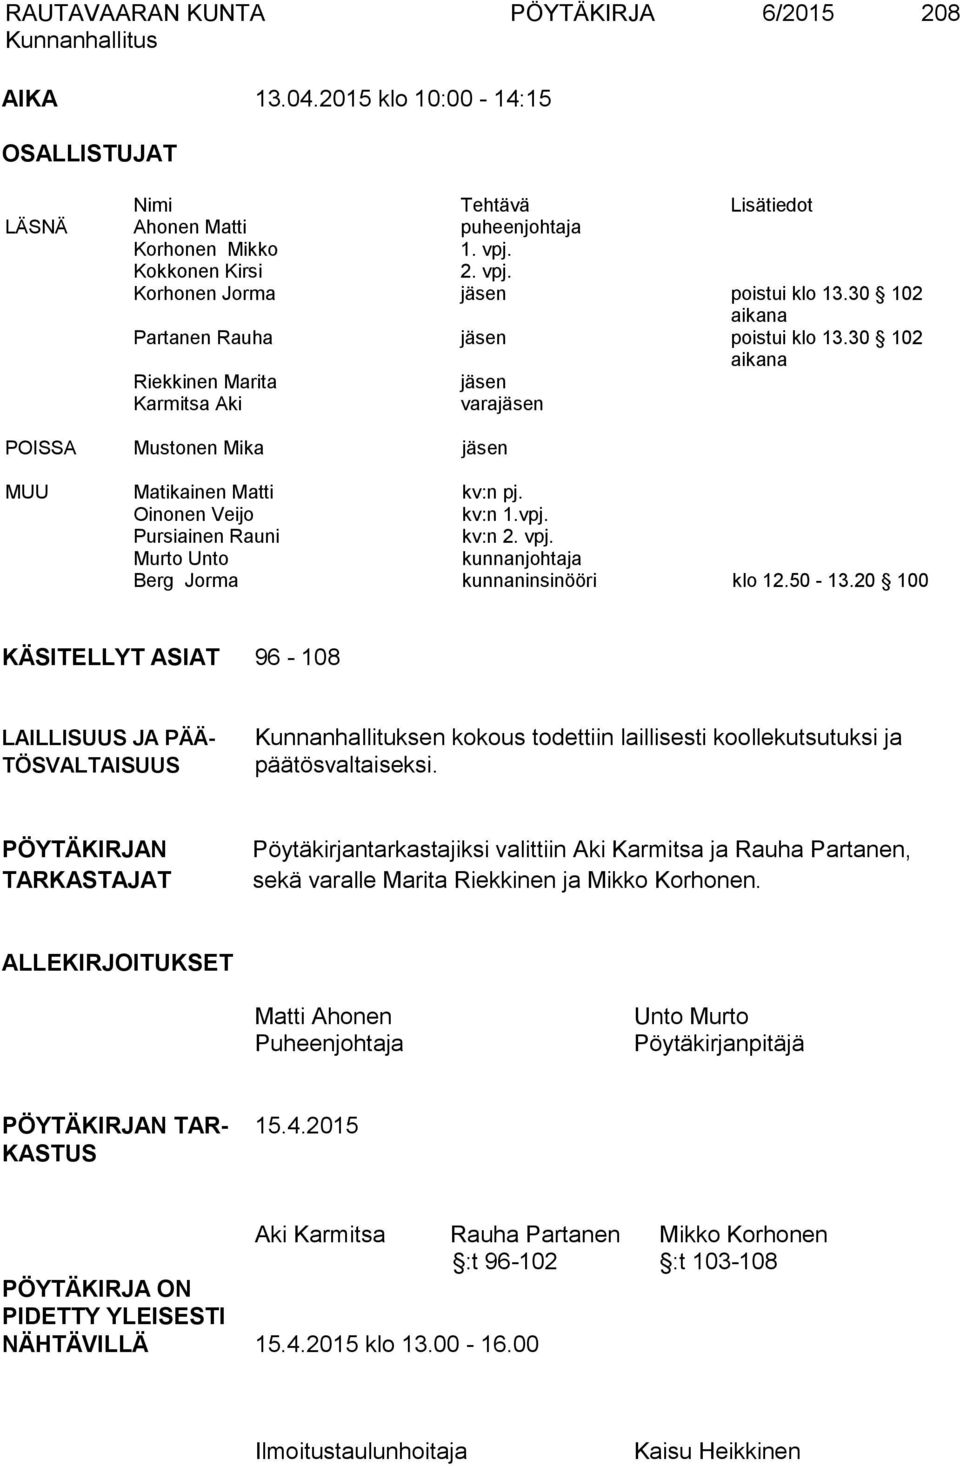 30 102 aikana Riekkinen Marita jäsen Karmitsa Aki varajäsen POISSA Mustonen Mika jäsen MUU Matikainen Matti kv:n pj. Oinonen Veijo kv:n 1.vpj. Pursiainen Rauni kv:n 2. vpj.